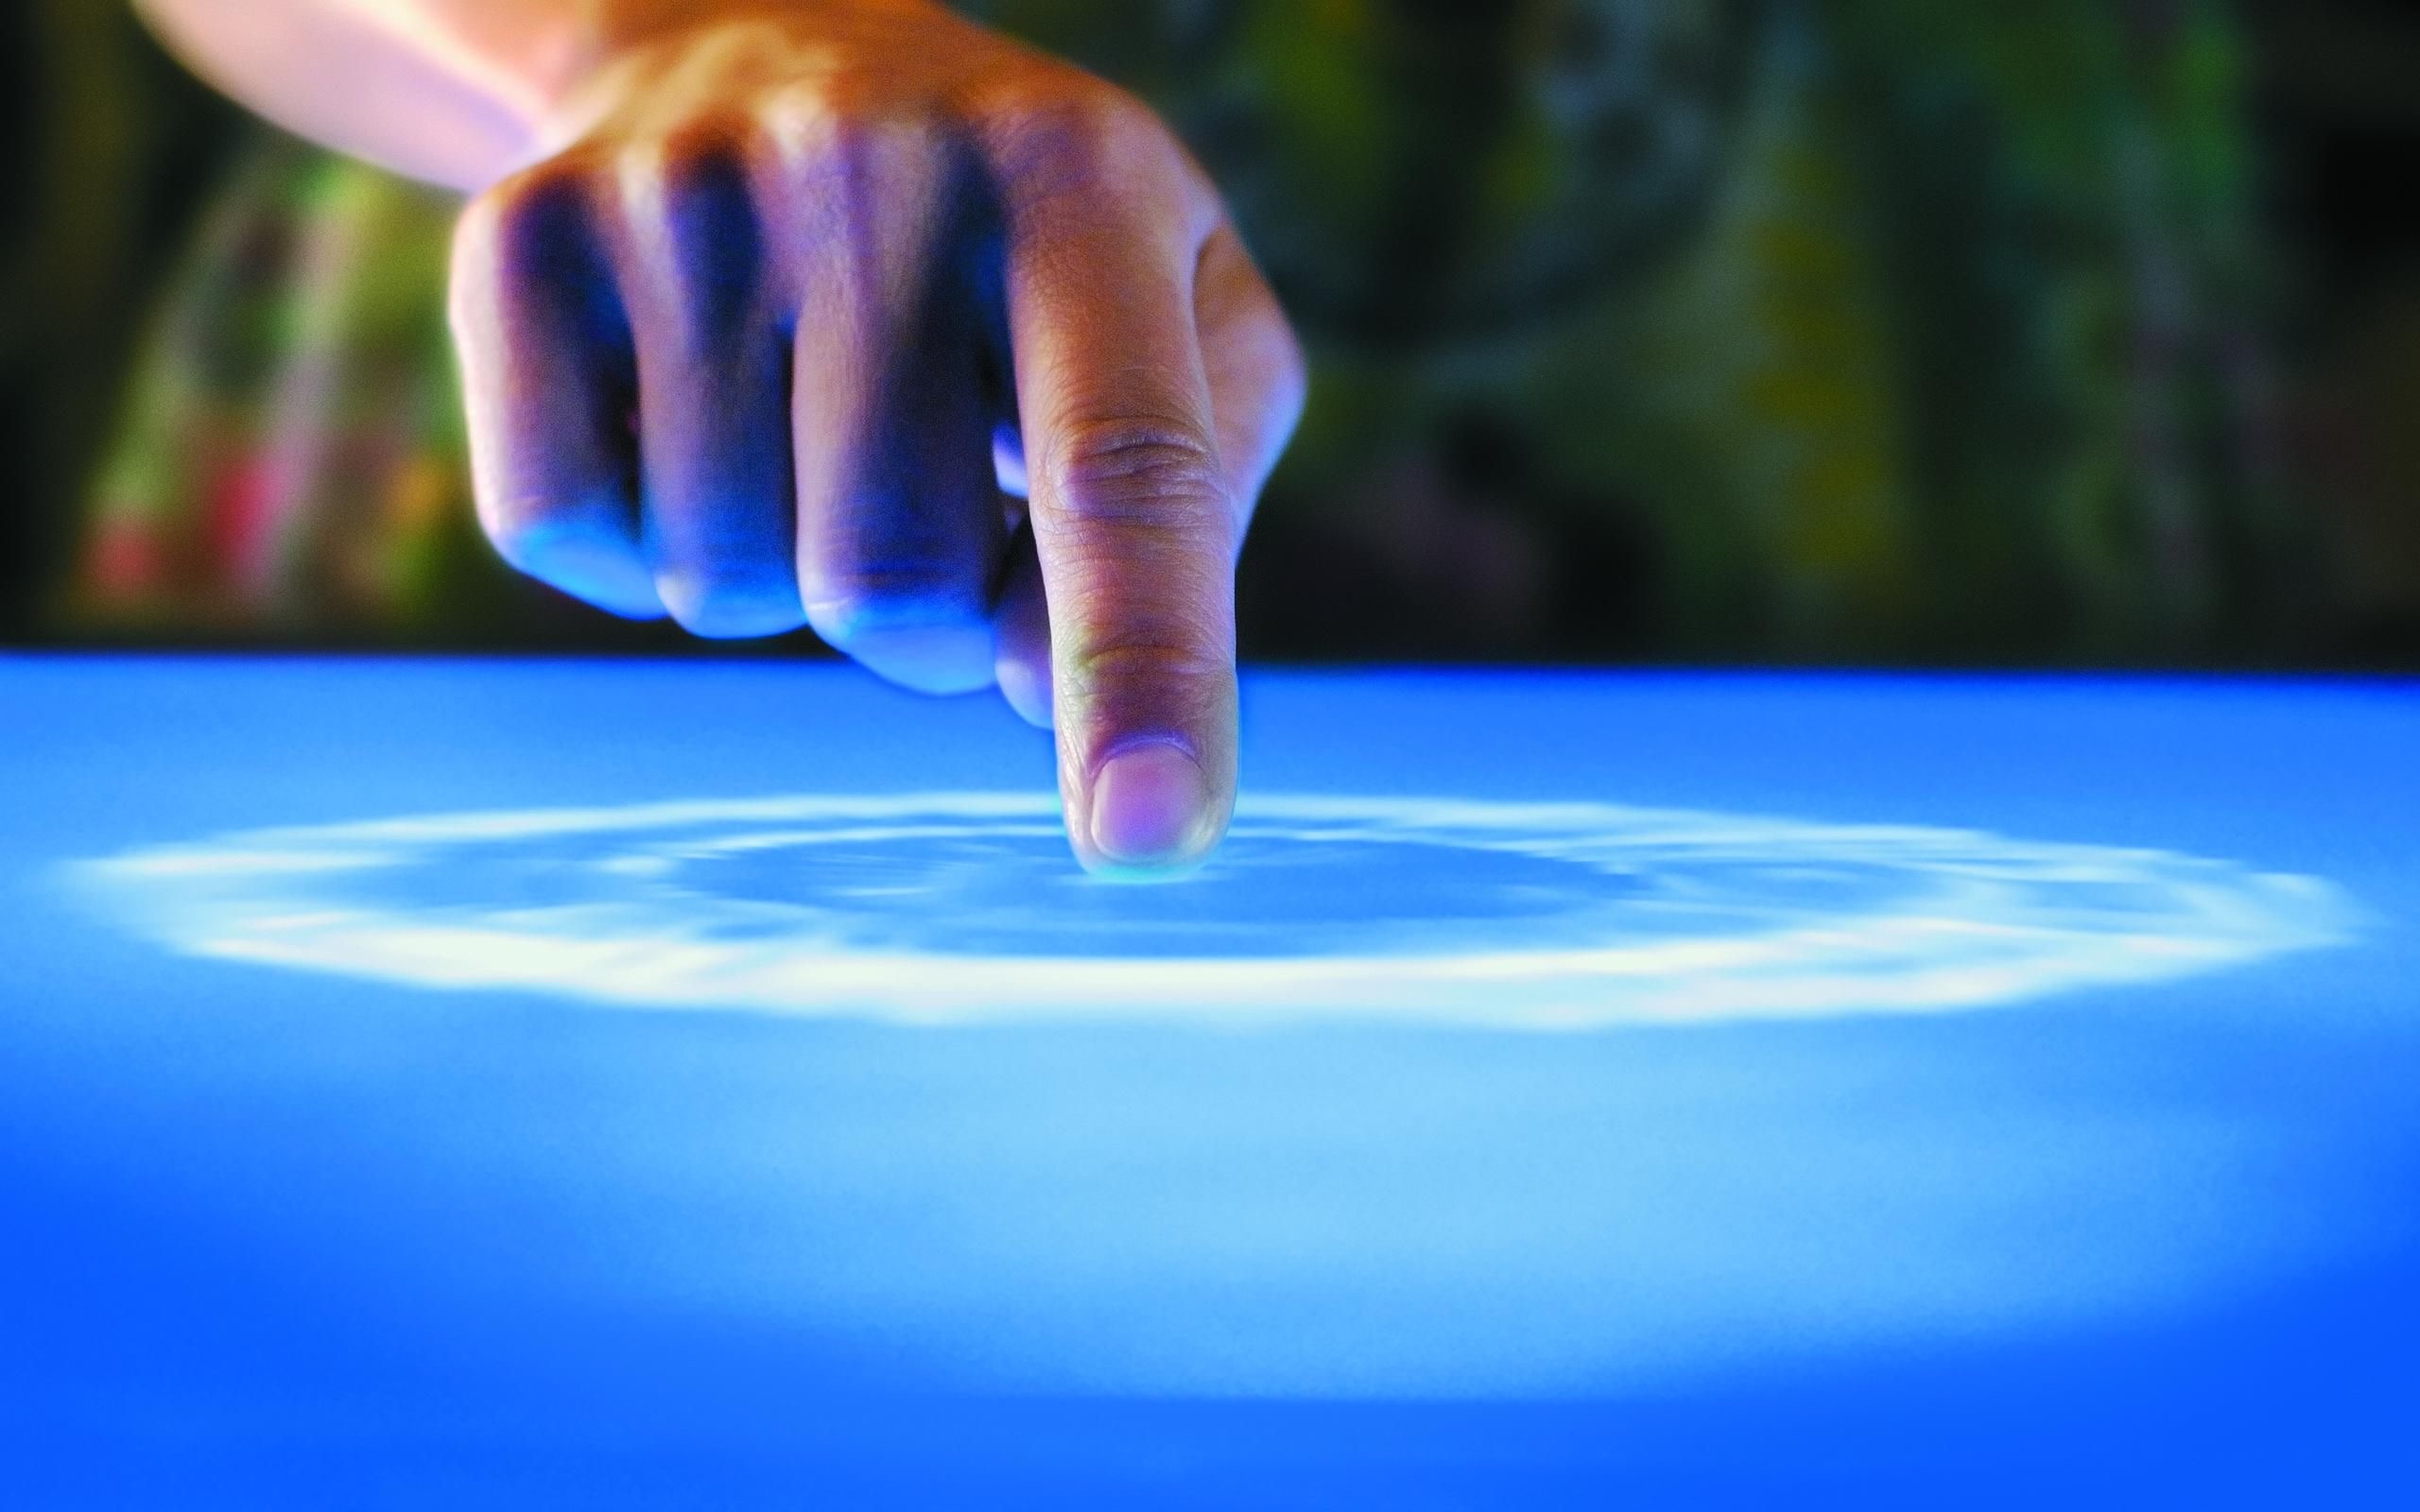 Нажатие пальцем на экран. Сенсорный экран. Прикосновение к воде. Рука касается воды. Эффект прикосновения.